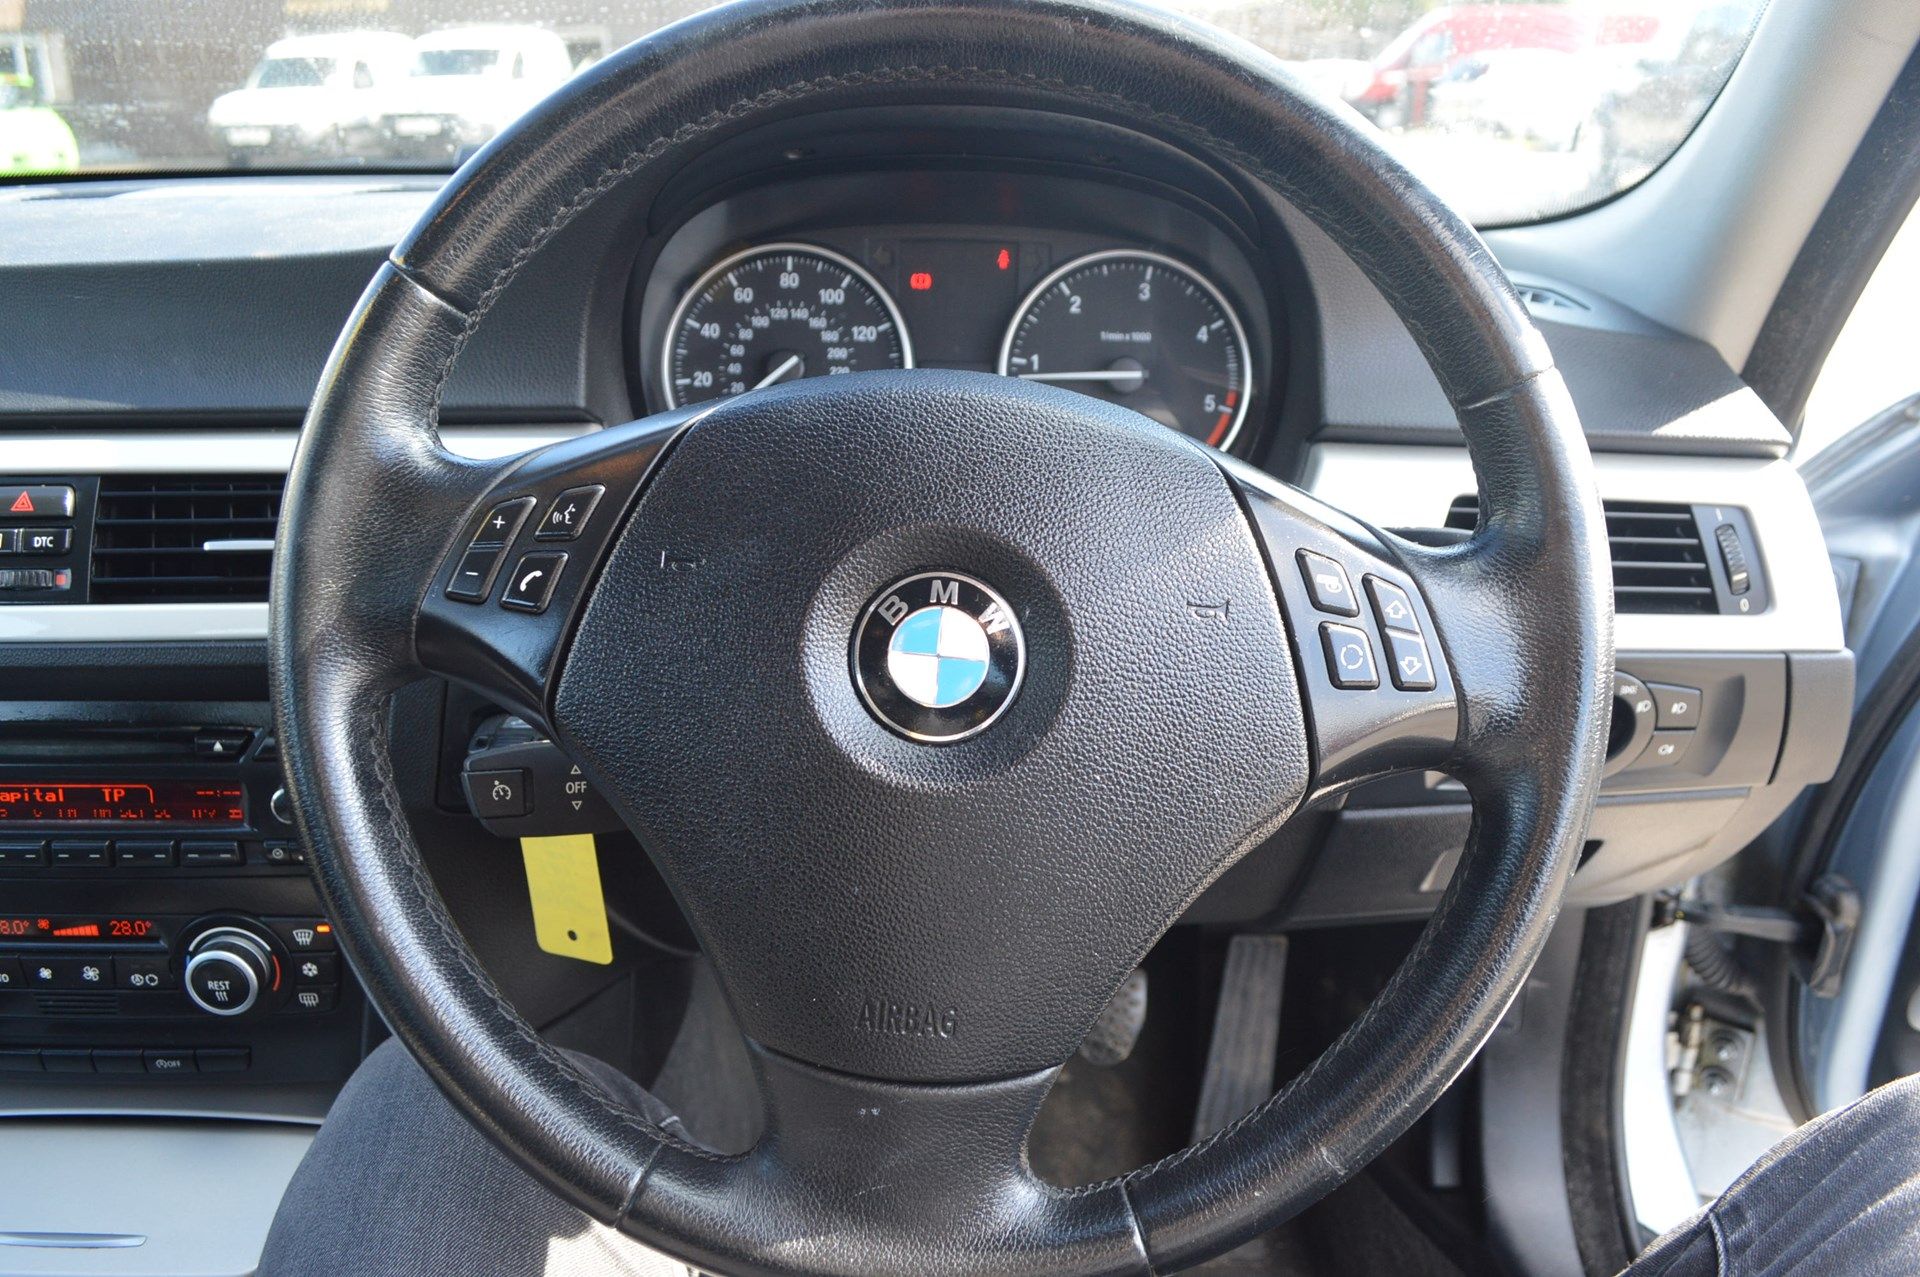 2008/58 REG BMW 318D SE BLUE DIESEL 4 DOOR SALOON, 6 SPEED MANUAL GEARBOX *NO VAT* - Image 22 of 27